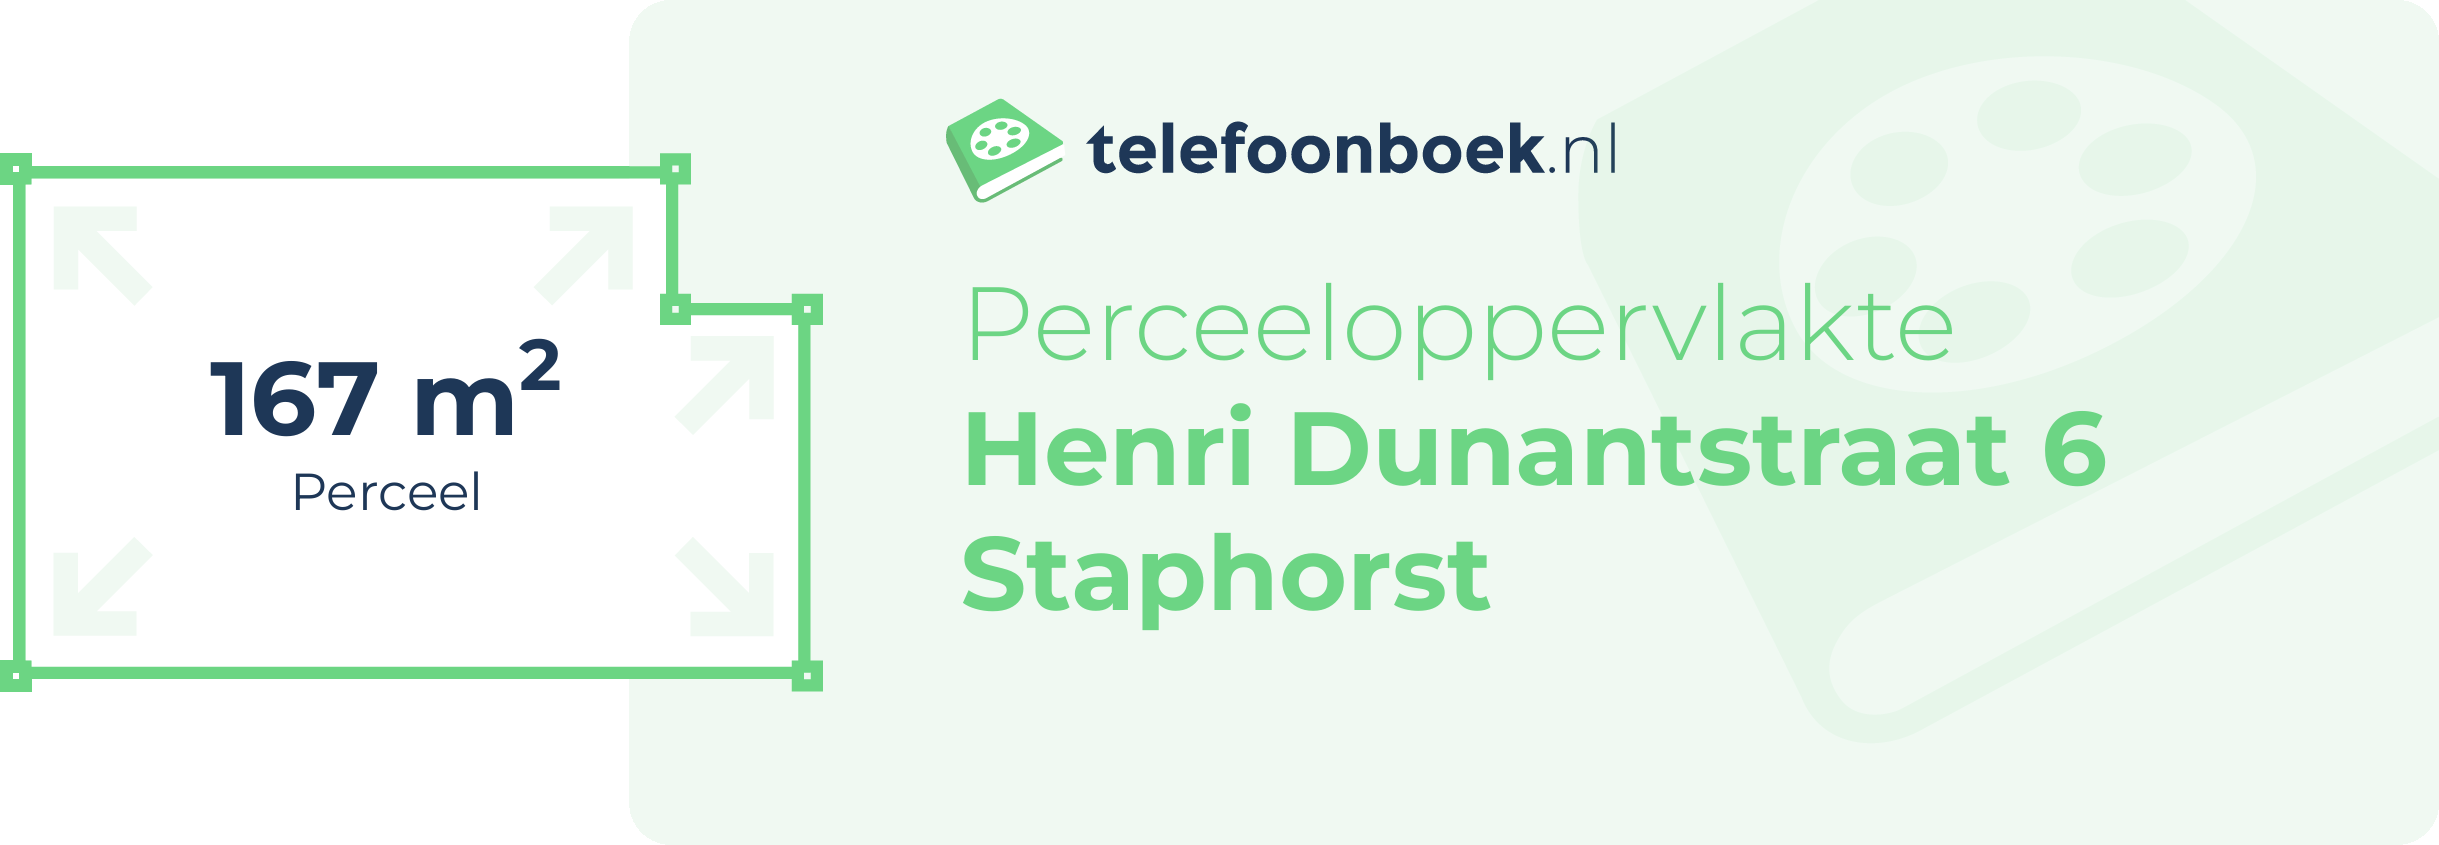 Perceeloppervlakte Henri Dunantstraat 6 Staphorst